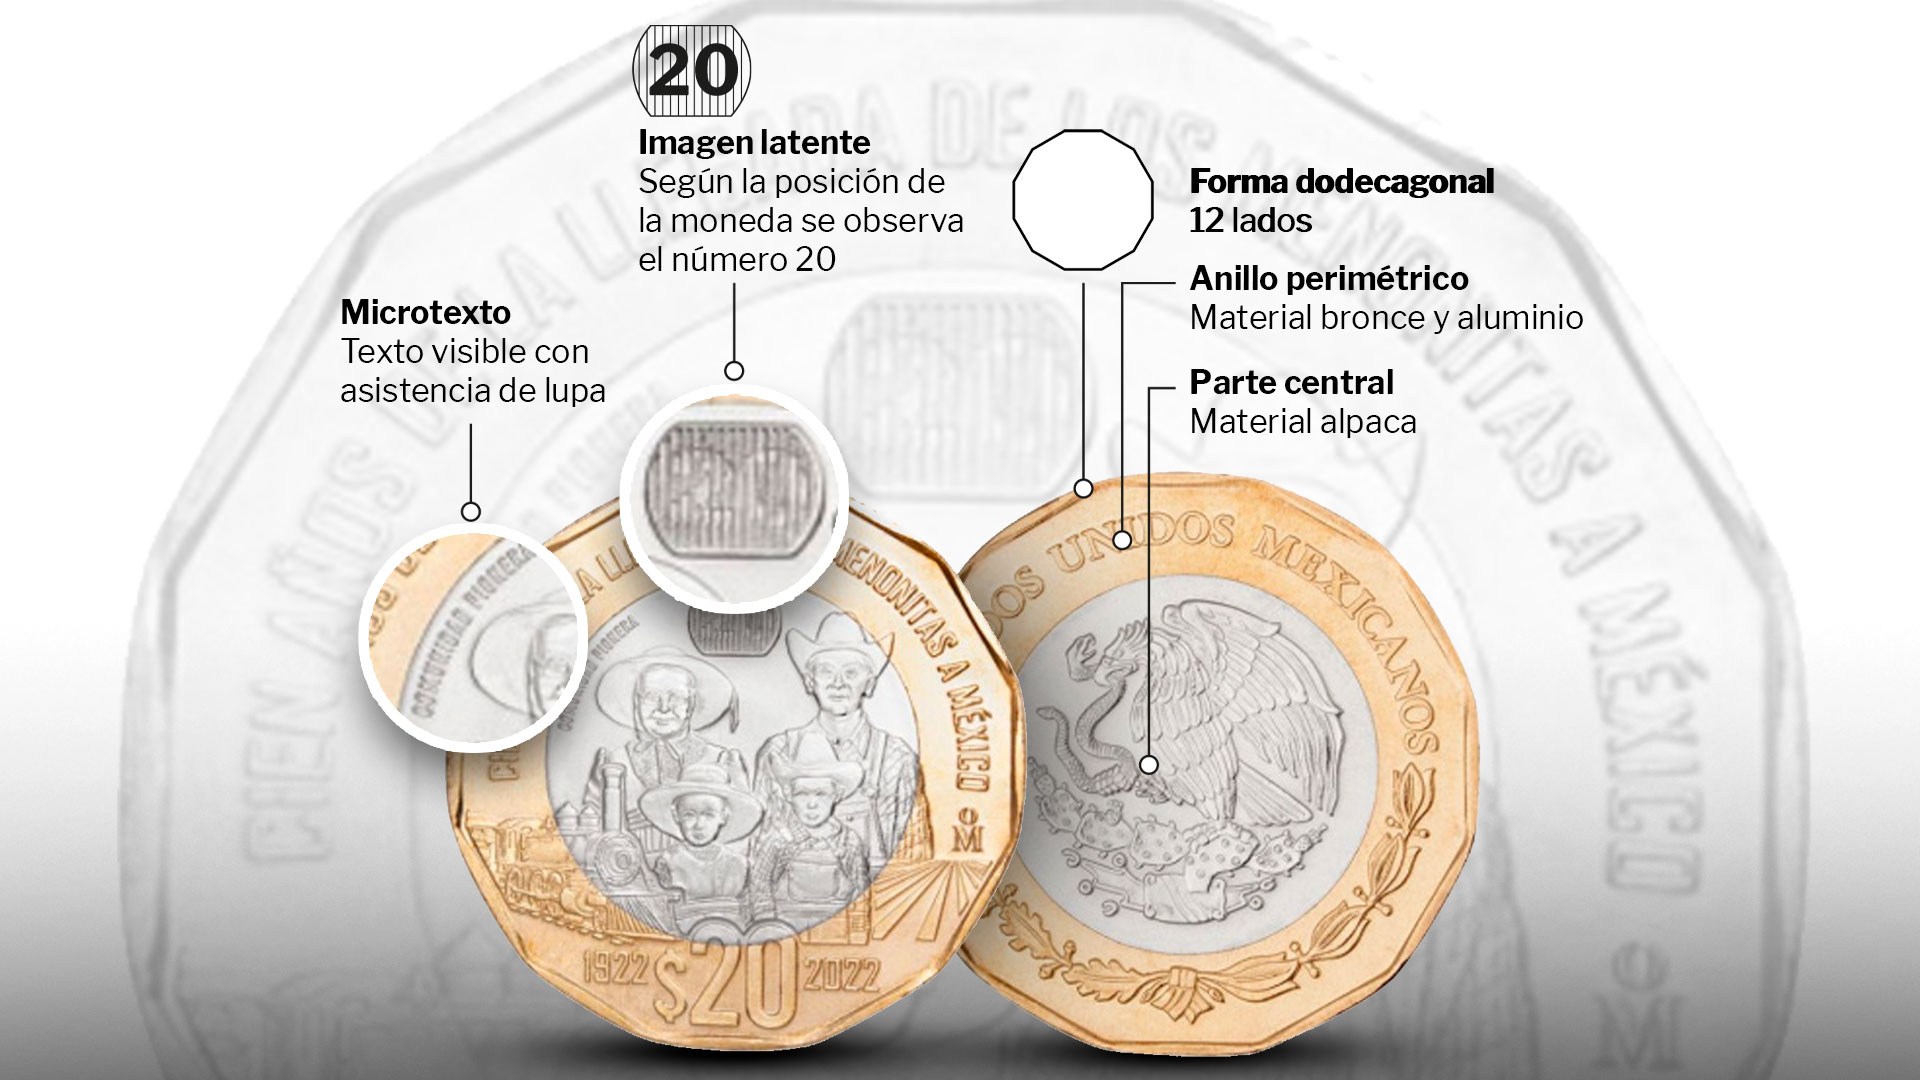 Moneda de los menonitas: cuáles son los elementos de seguridad del ejemplar que se ofrece en más de 800 pesos